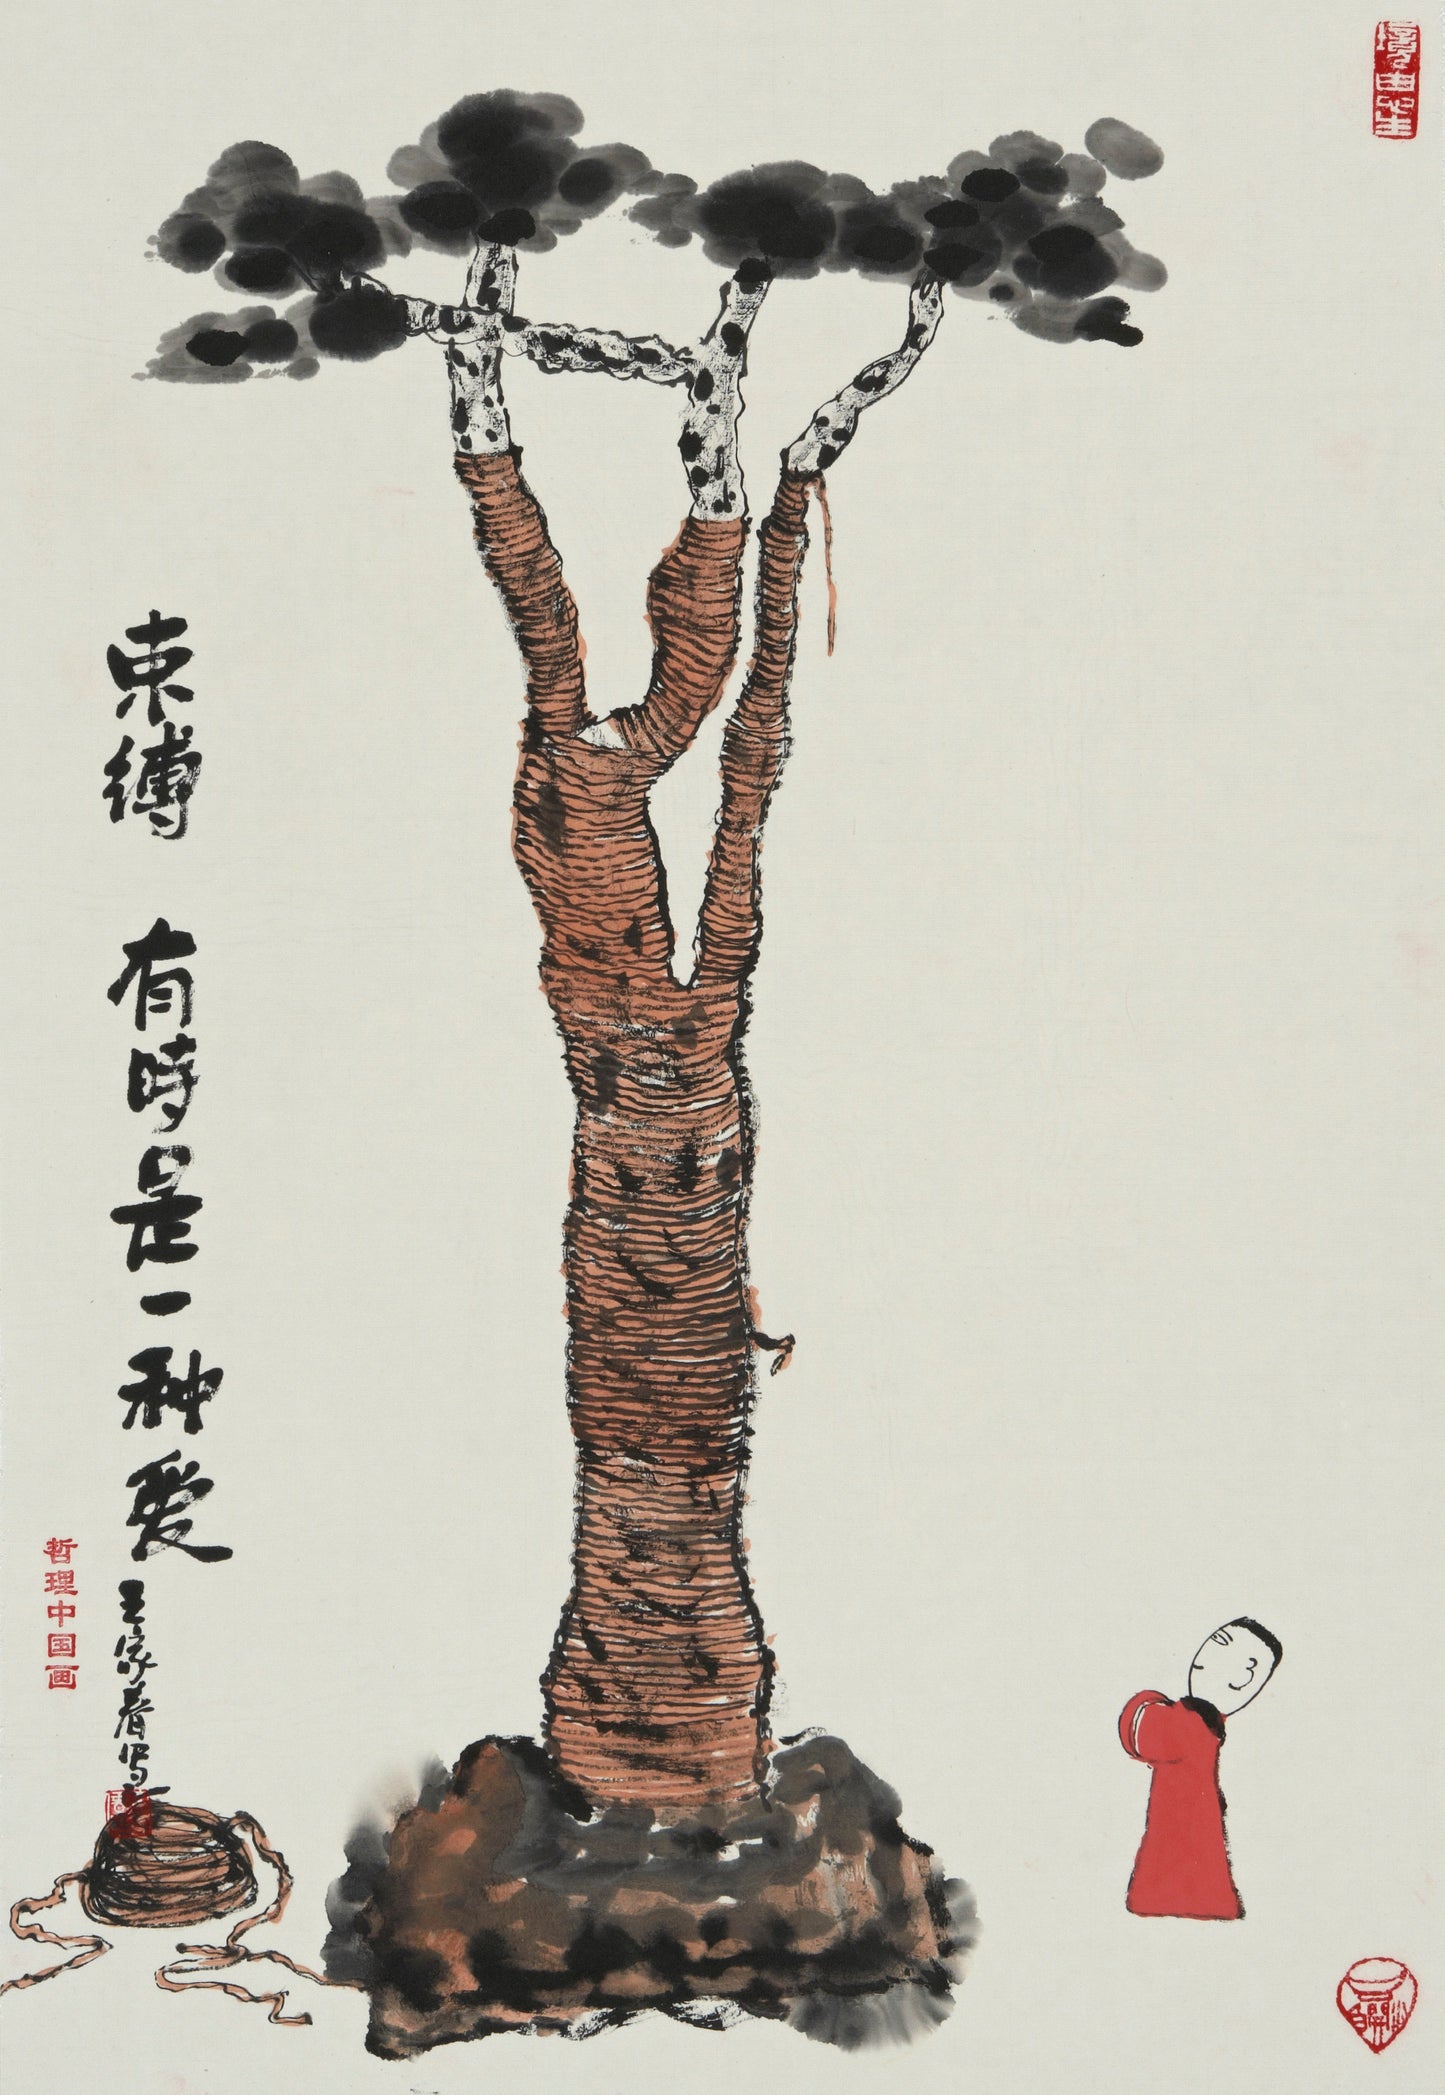 【数藏元】哲理中国画系列数字藏品王家春《束缚有时是一种爱》展品勿拍